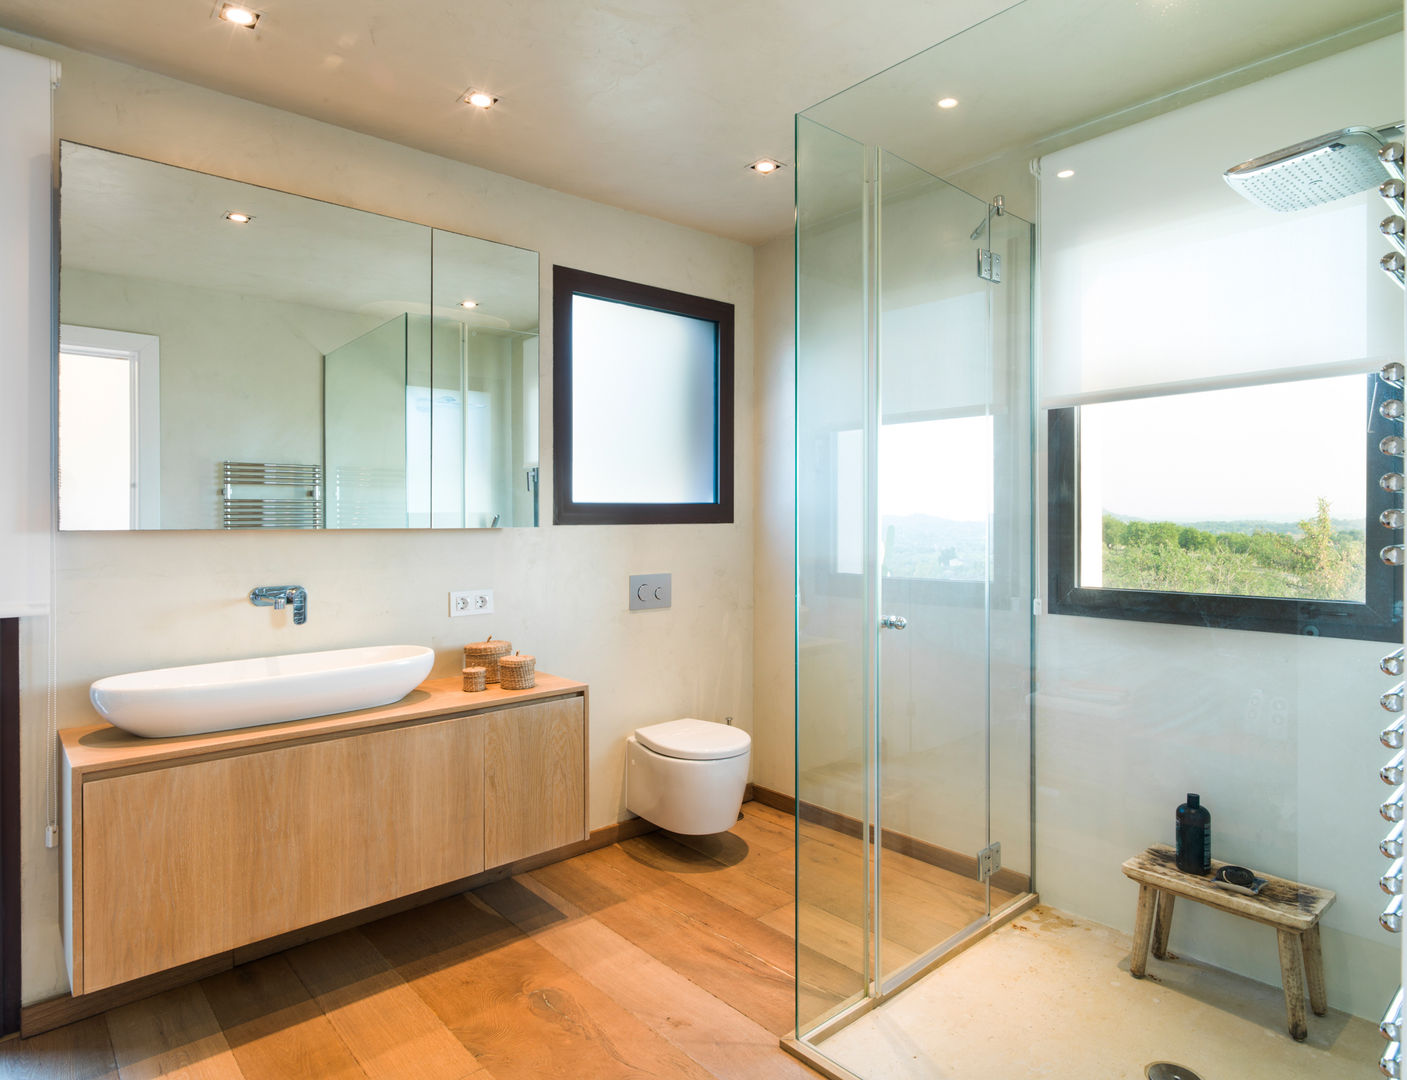 baño suite margarotger interiorisme Baños de estilo moderno